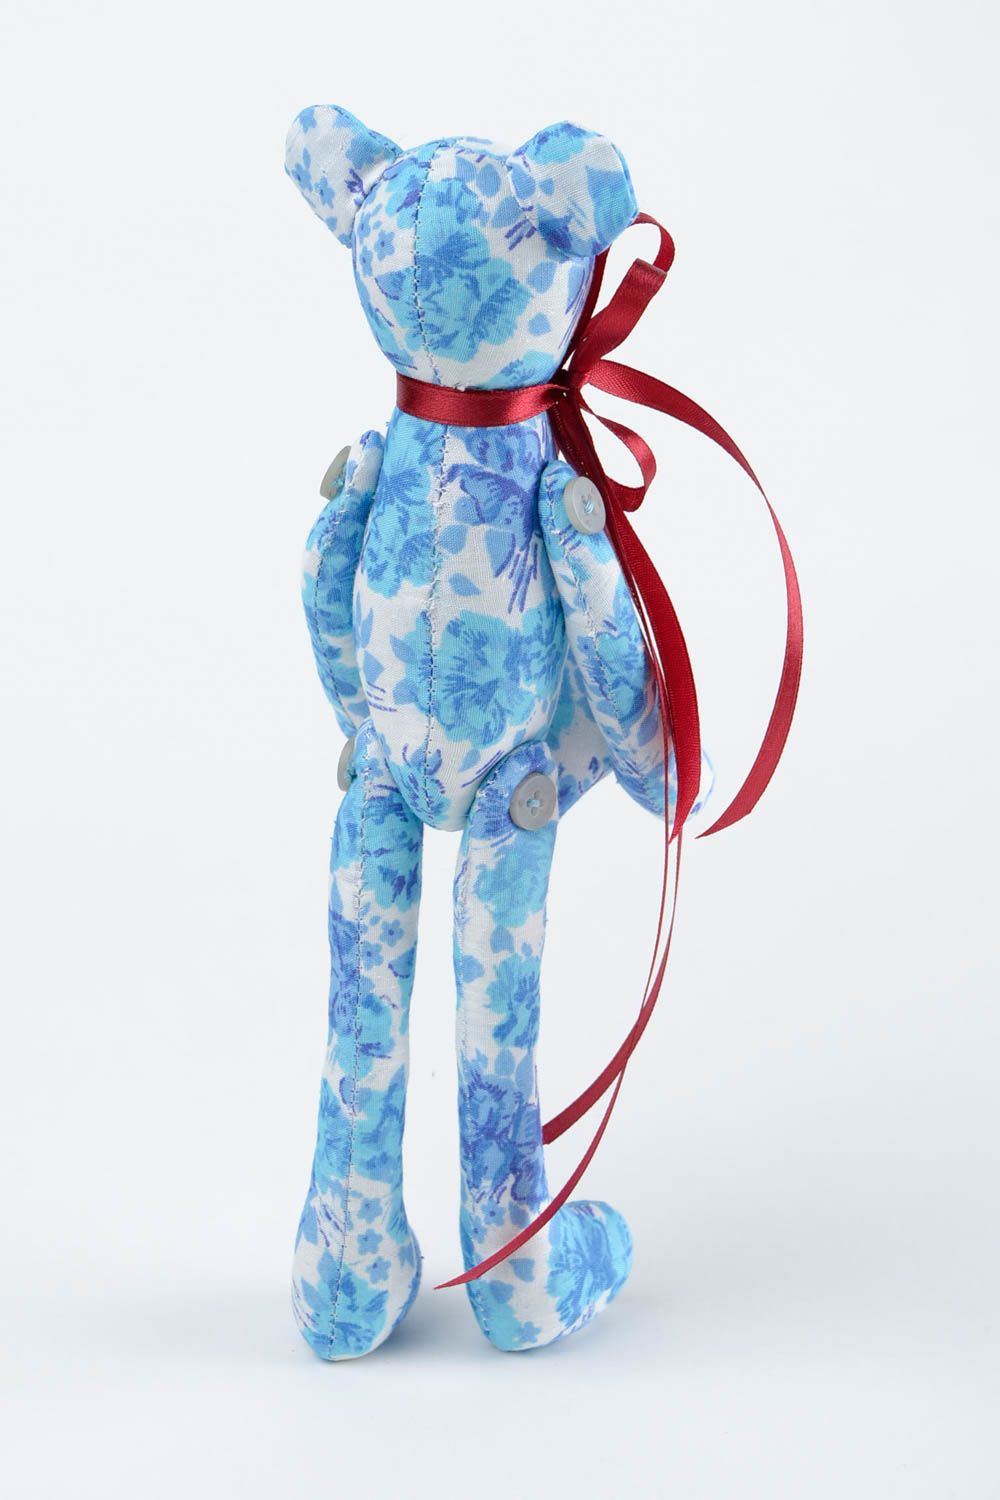 Игрушка мишка из ткани игрушка ручной работы голубая интересный подарок для дома фото 5